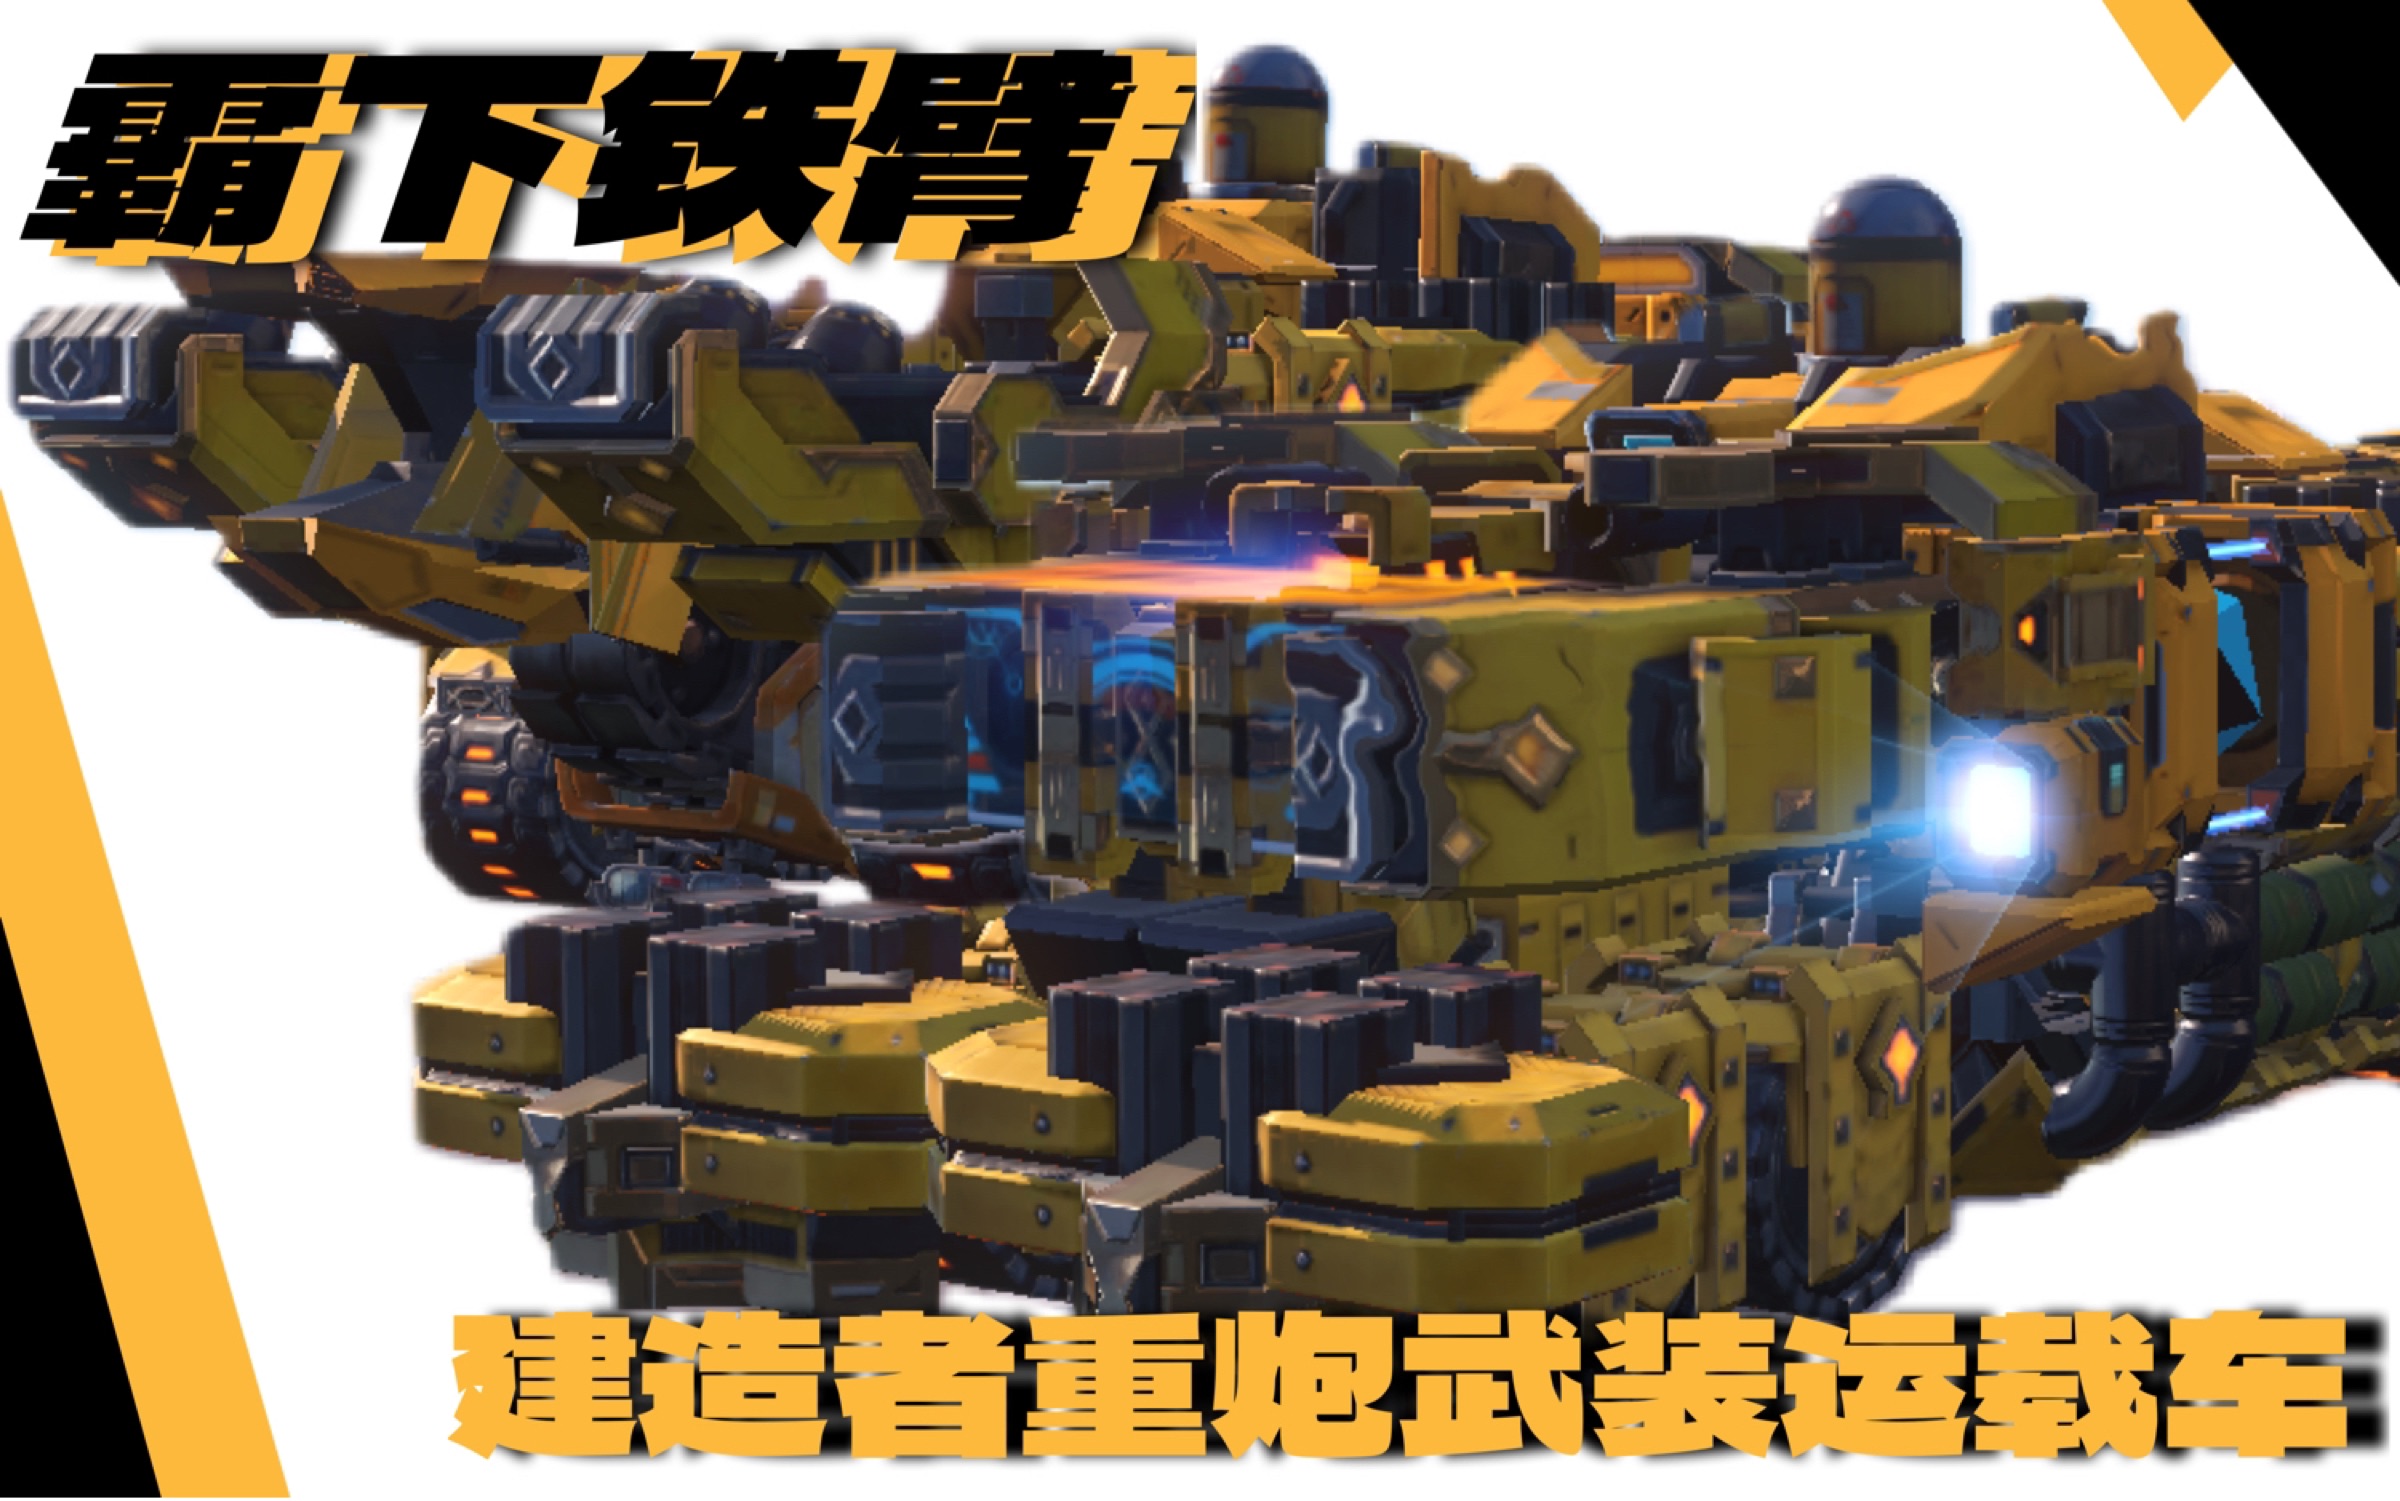 【重装上阵】霸下铁臂—建造者重炮武装运重型载车